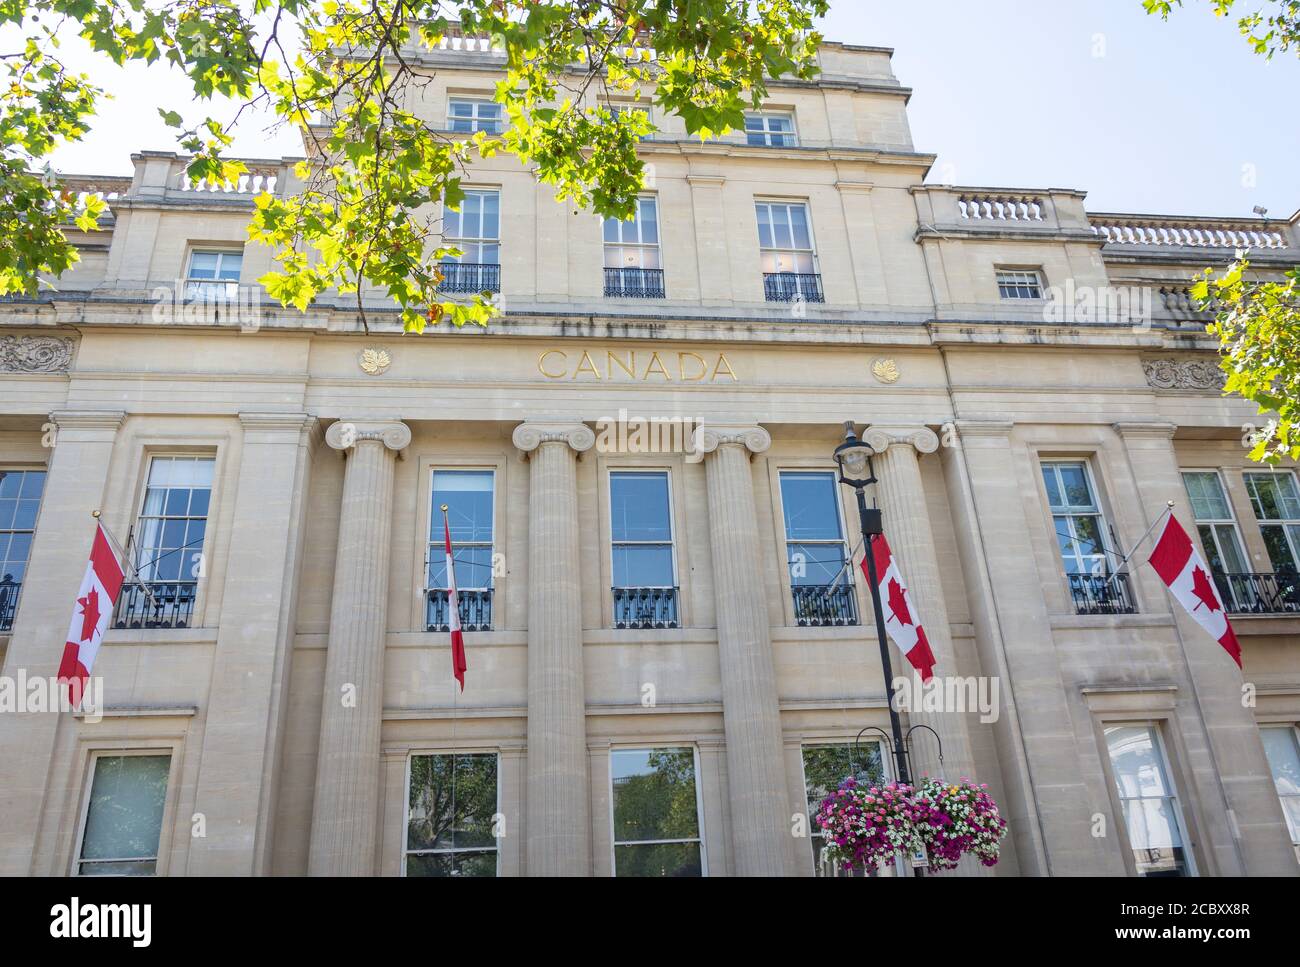 Haut-commissariat du Canada, Maison du Canada, Trafalgar Square, Cité de Westminster, Grand Londres, Angleterre, Royaume-Uni Banque D'Images